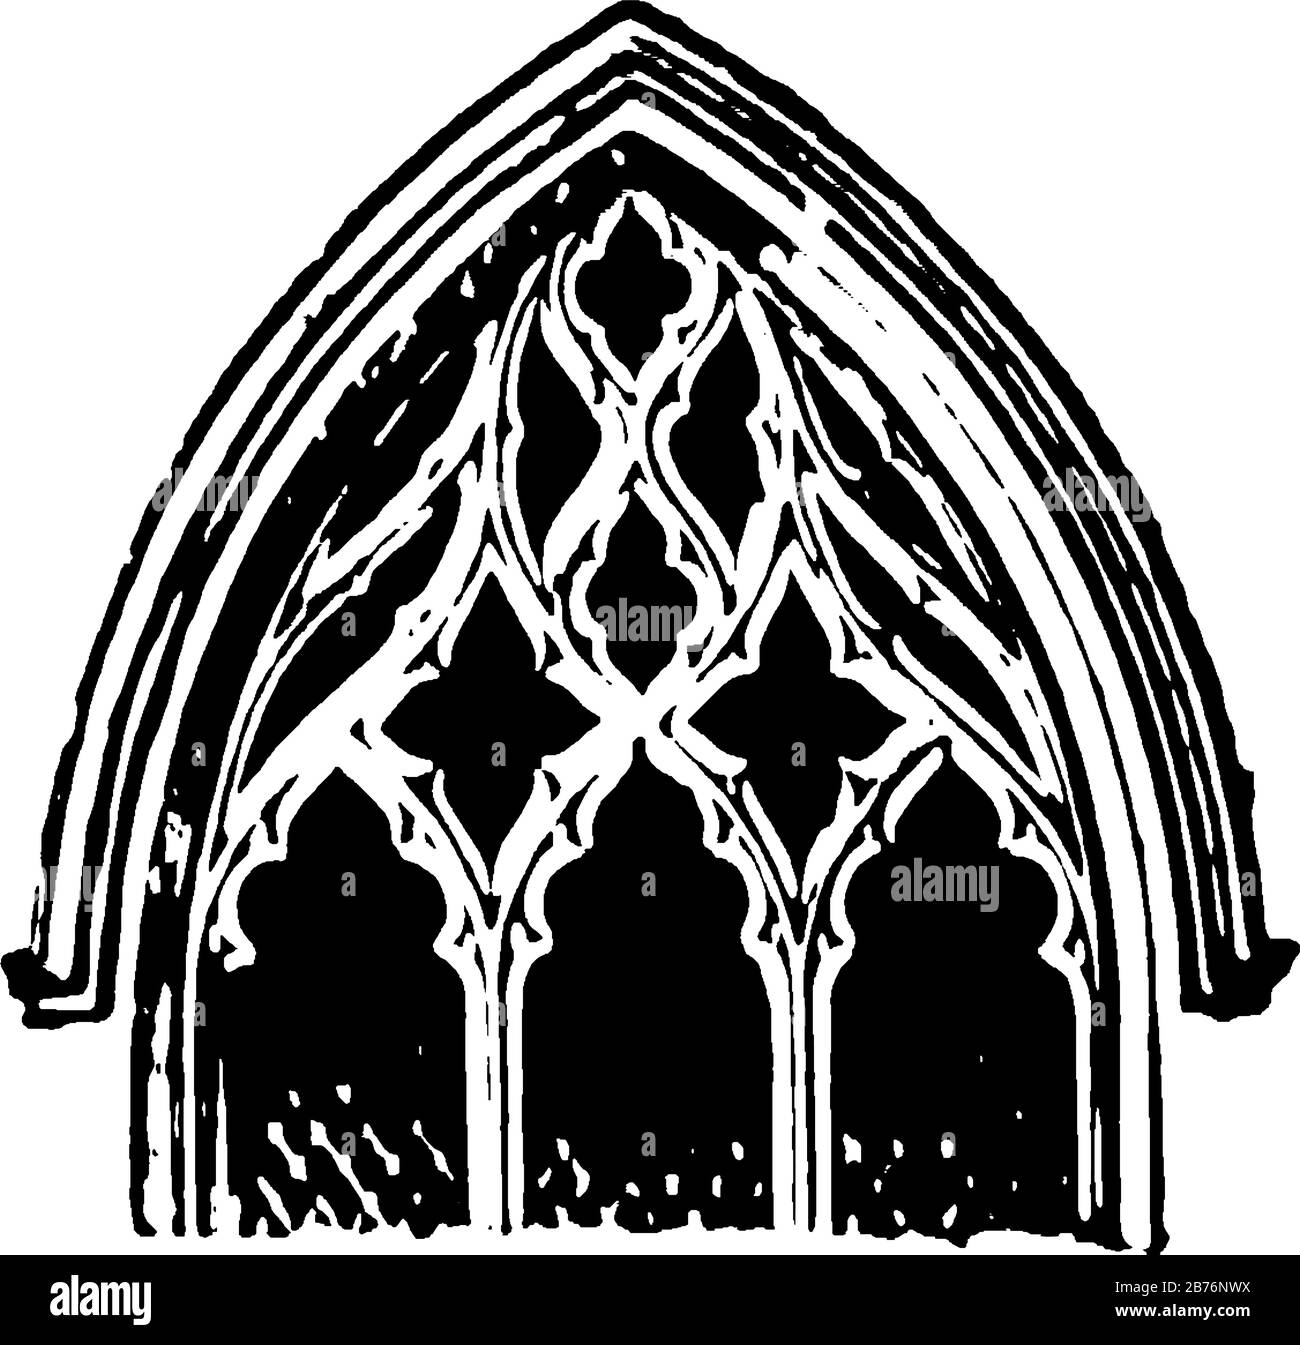 Il Tracery è la caratteristica chiave delle fasi successive, lo stile architettonico gotico ha utilizzato una serie di categorie piuttosto arbitrarie, supposta evoluzione, linea vintage Illustrazione Vettoriale